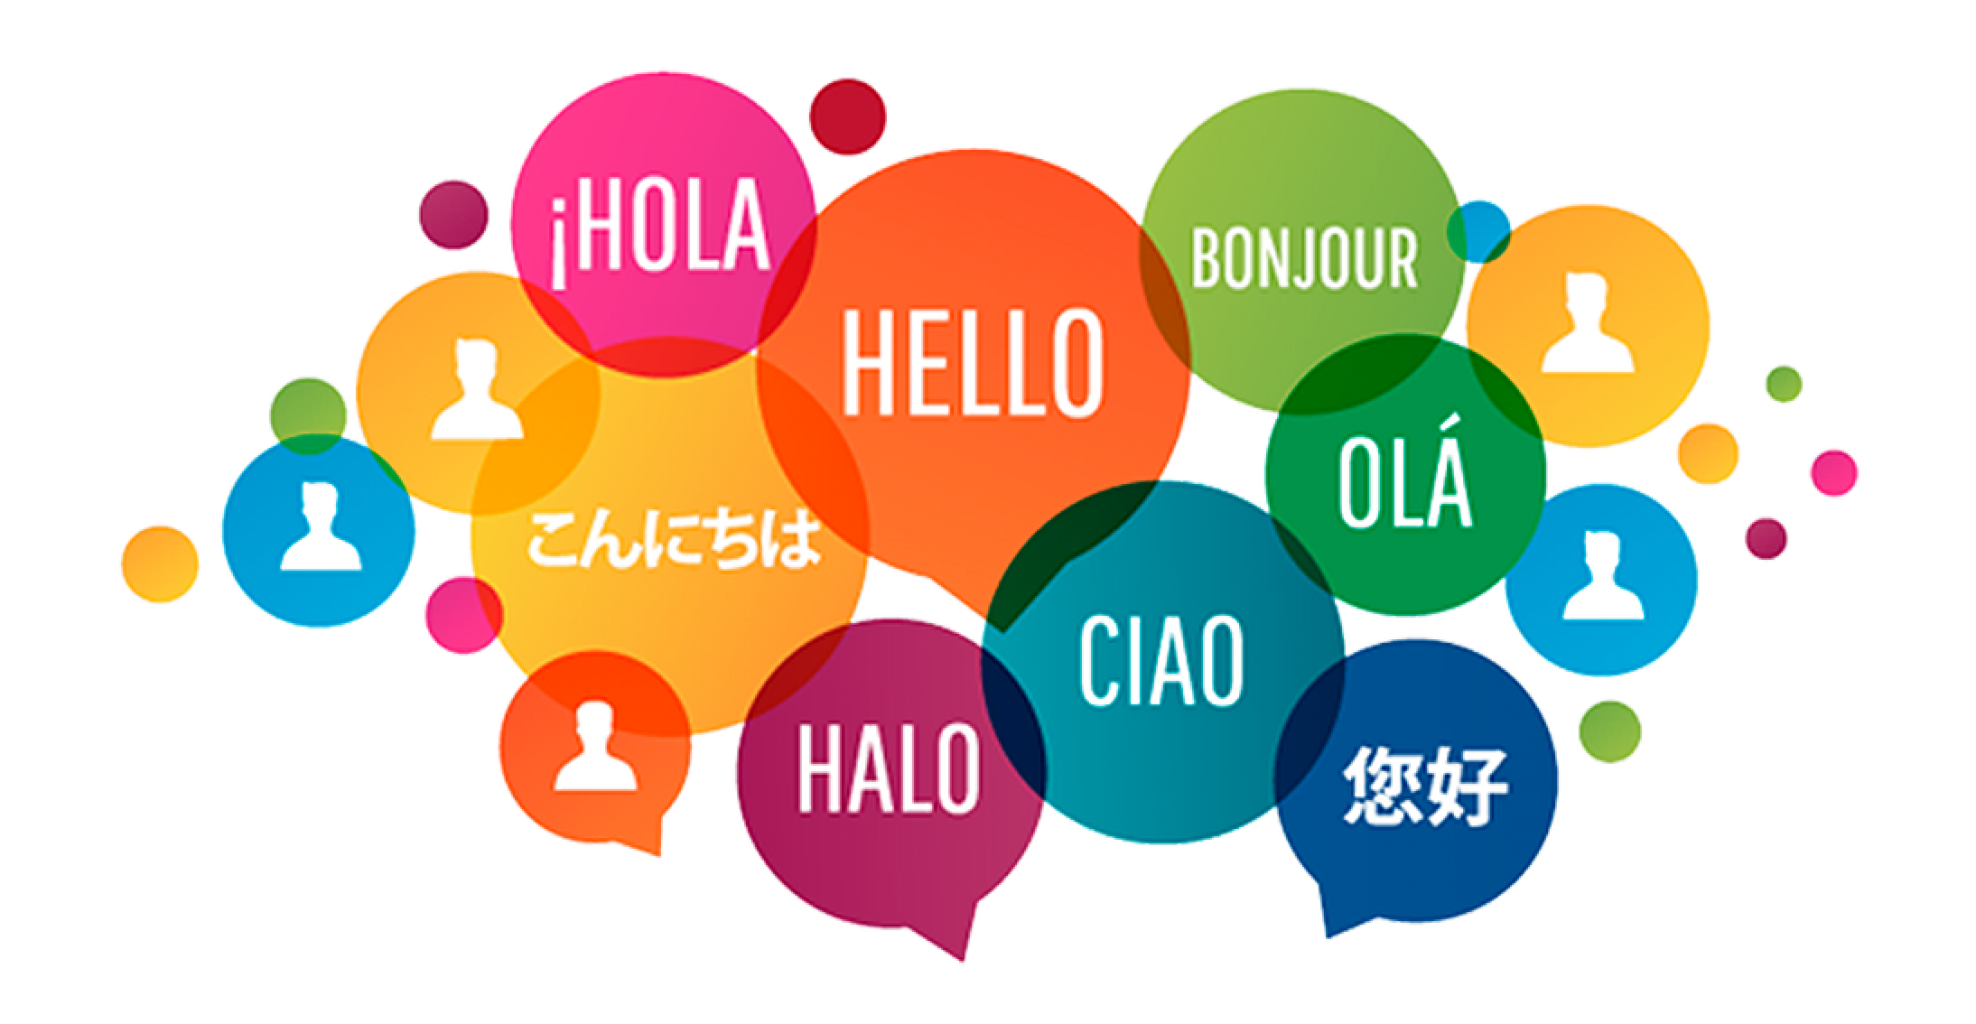 Casi 68 millones de personas hablaron un idioma distinto al inglés en casa en 2019